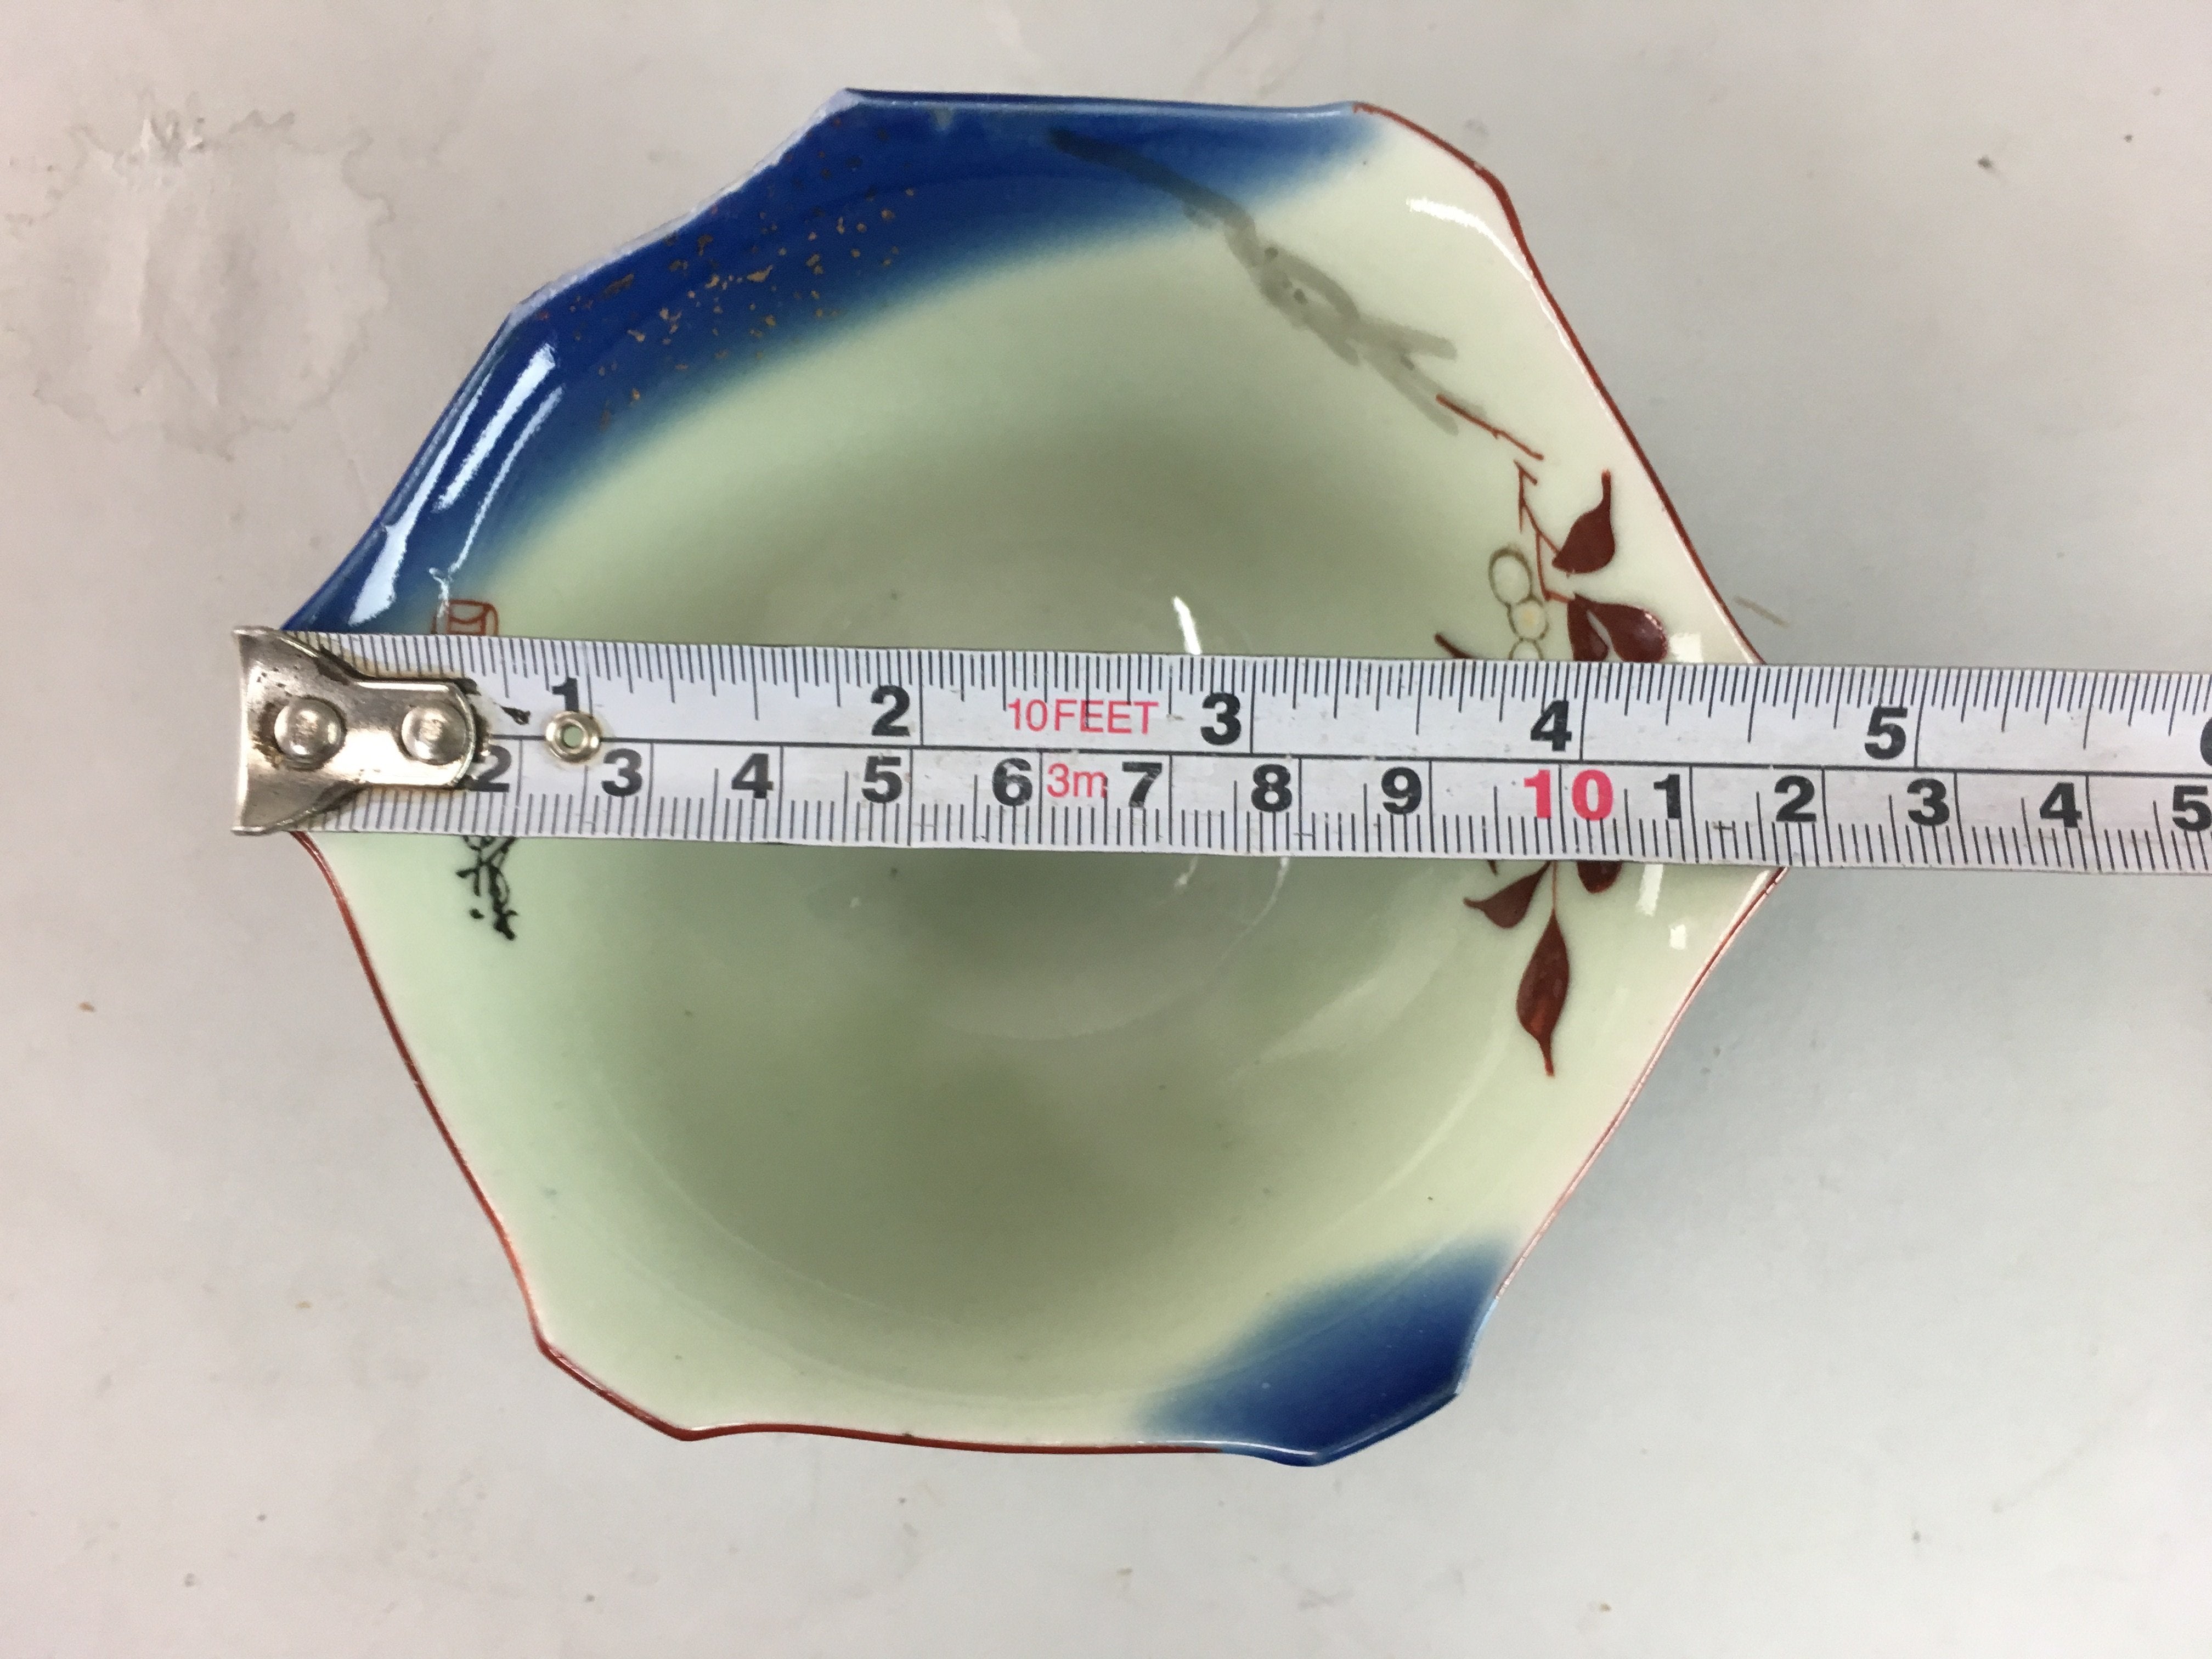 Japanese Porcelain 6 Sided Bowl Vtg Kobachi Blue Green Leaf Snack Kanji PT204